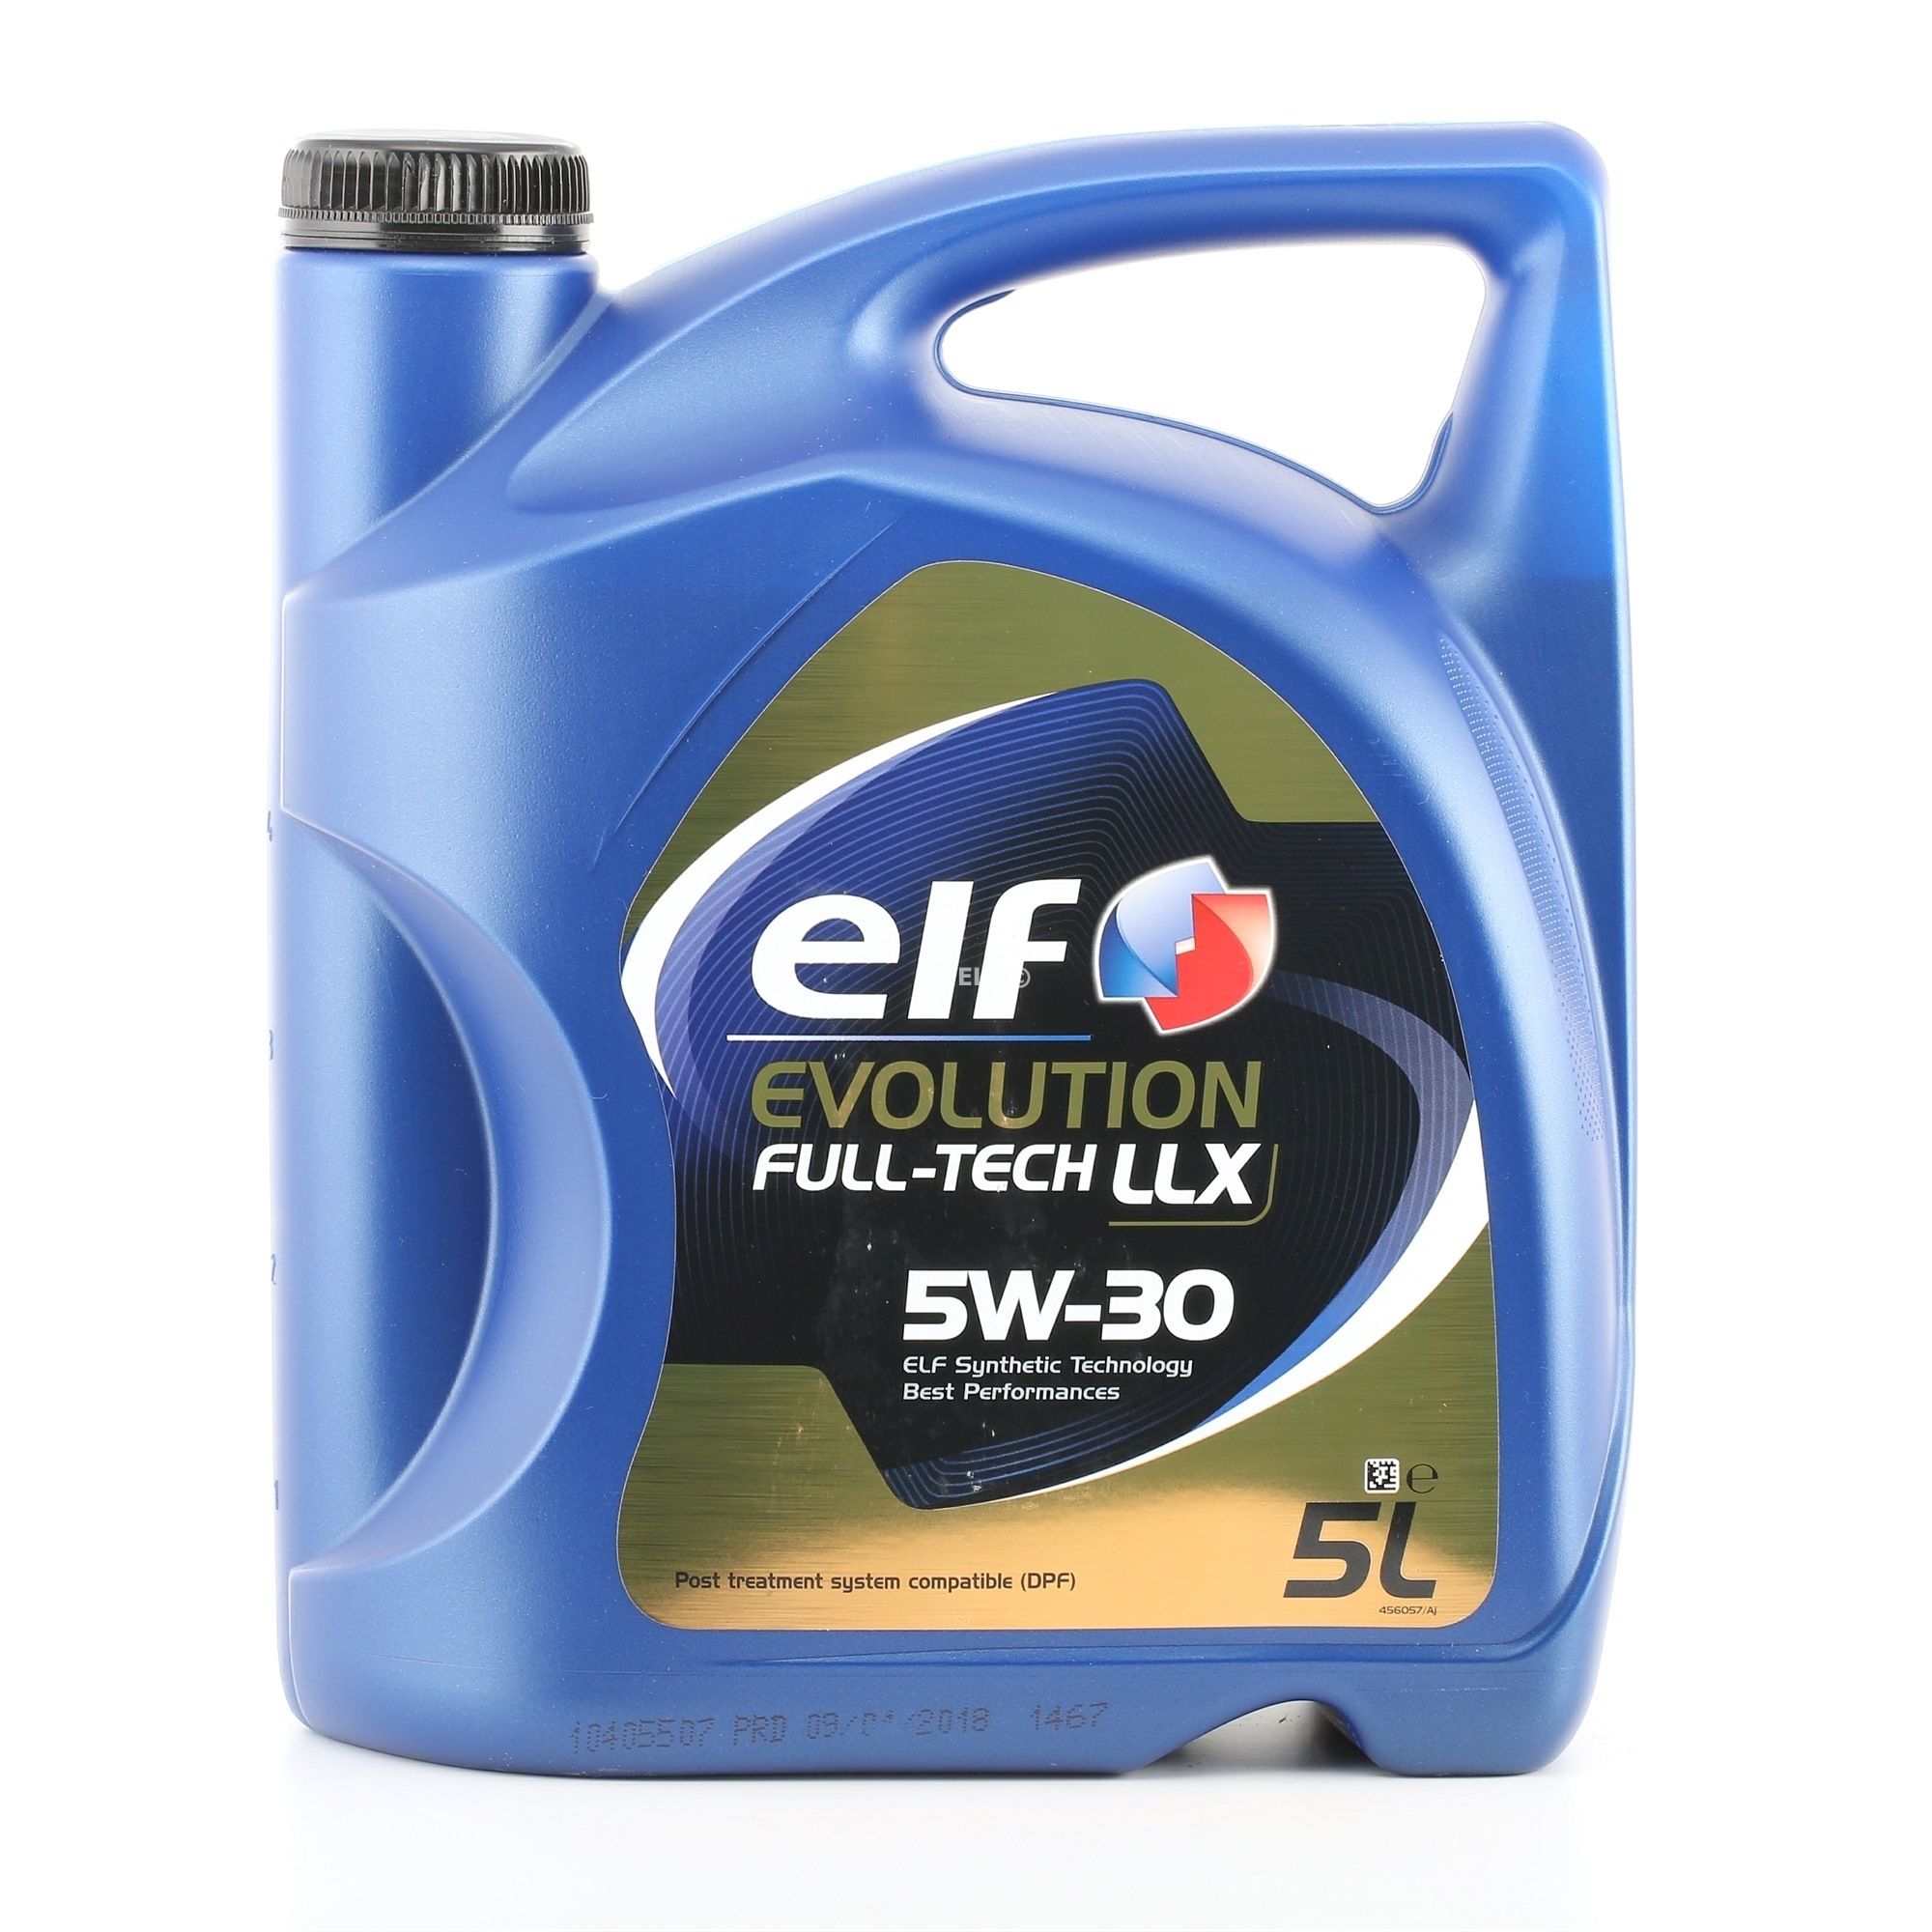 elk Notebook klauw 2194890 ELF Evolution, Full-Tech LLX Motorolie 5W-30, 5L, Synthetische olie  — Nu kopen!